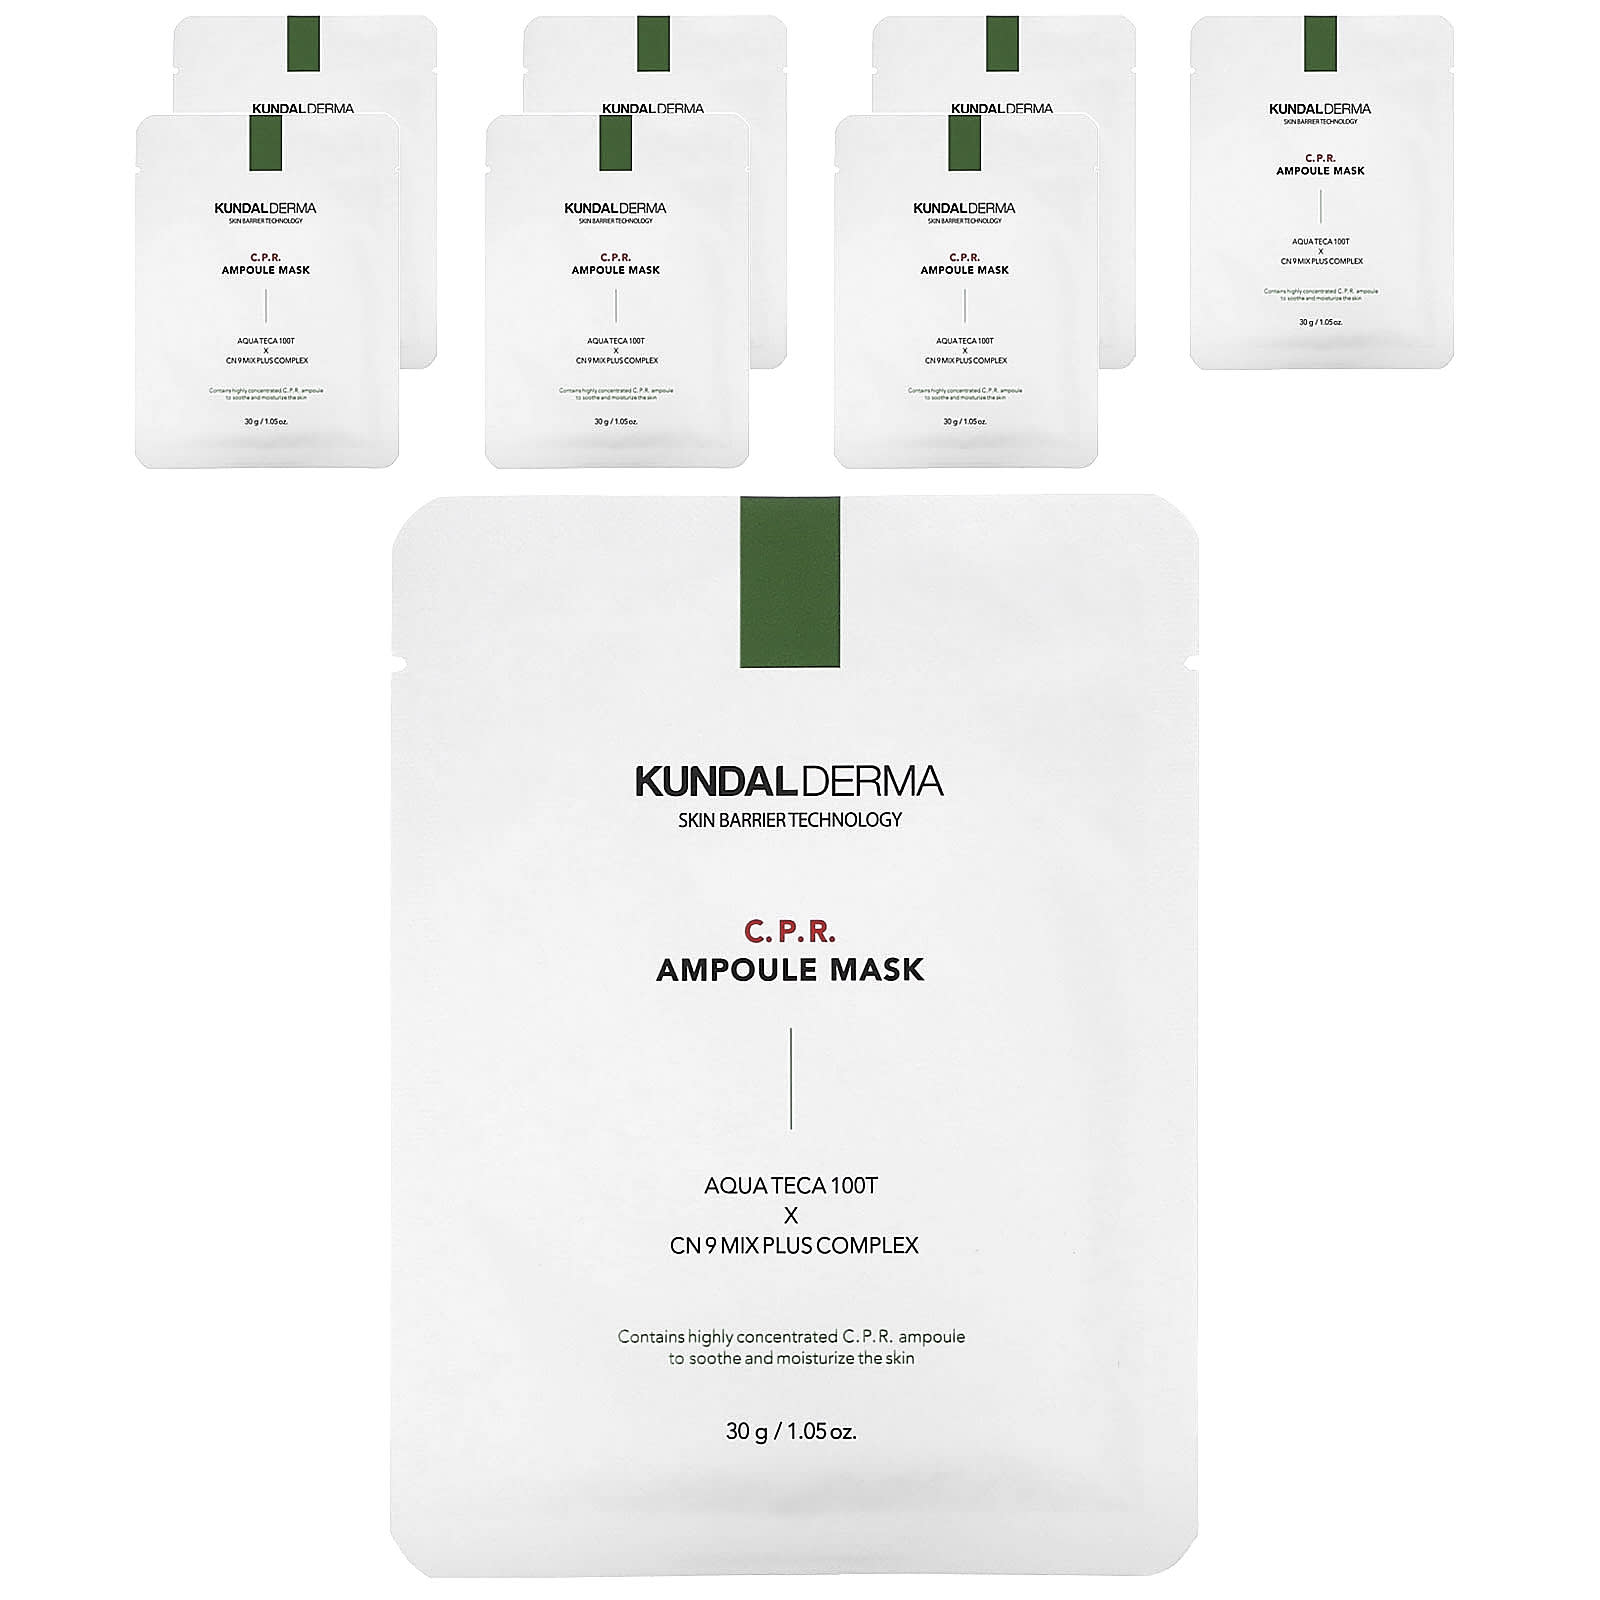 Kundal-Derma-C.P.R. Ampoule Beauty Mask -7 Sheet Masks-1.05 oz (30 g) Each